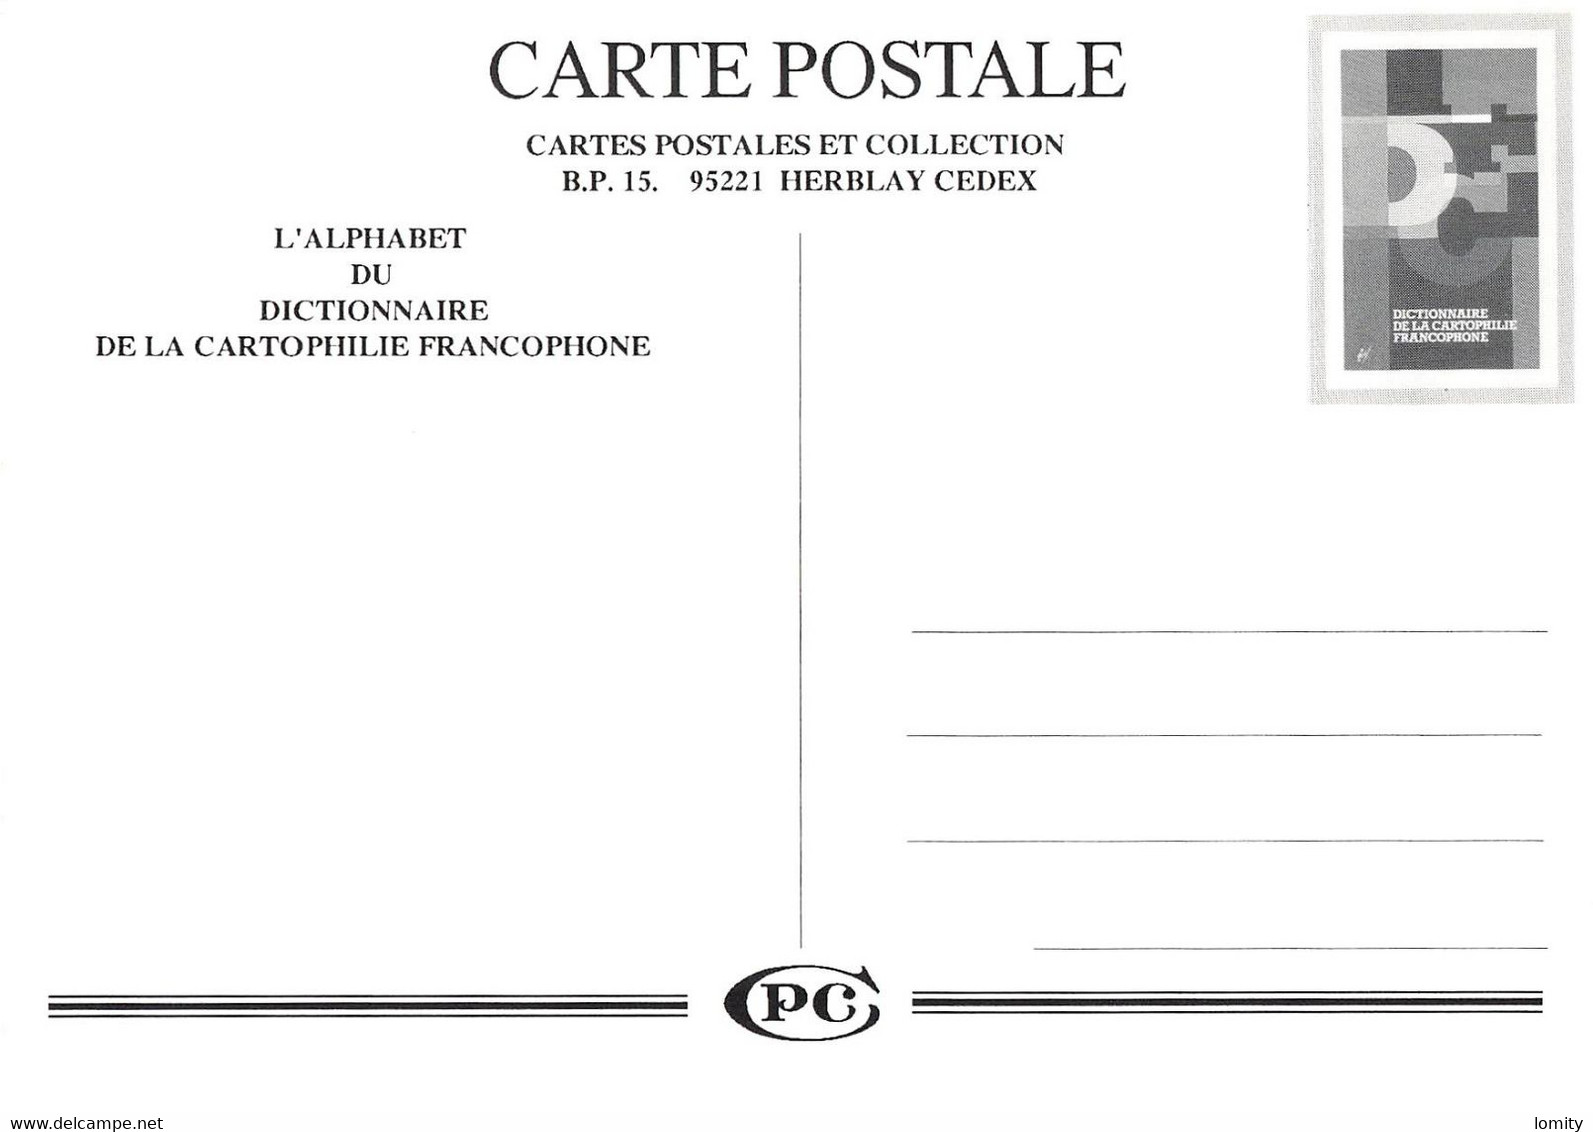 illustrateur série complète 33 cartes dictionnaire de la cartophilie francophone Hamm Veyri Wittmer Oziouls Avati Claval